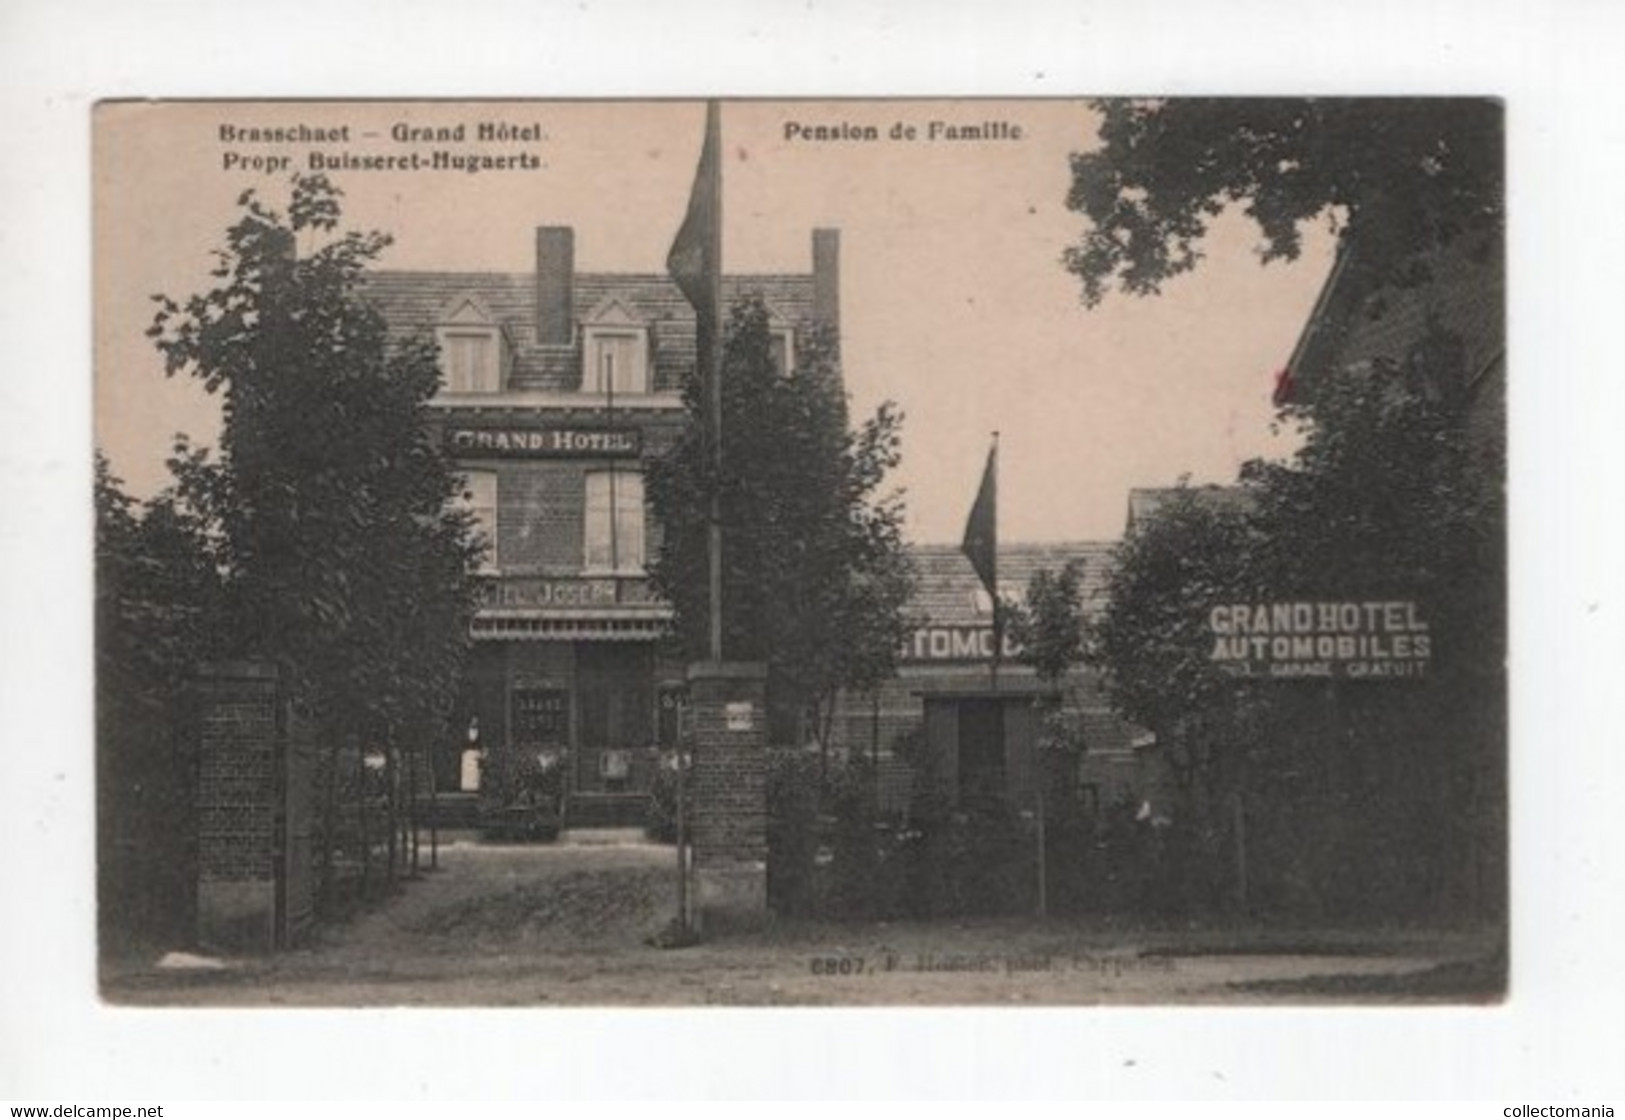 1 Oude Postkaart  BRASSCHAET Brasschaat  Grand Hôtel   Hotel Joseph Pension De Famille  Uitgever Hoelen - Brasschaat